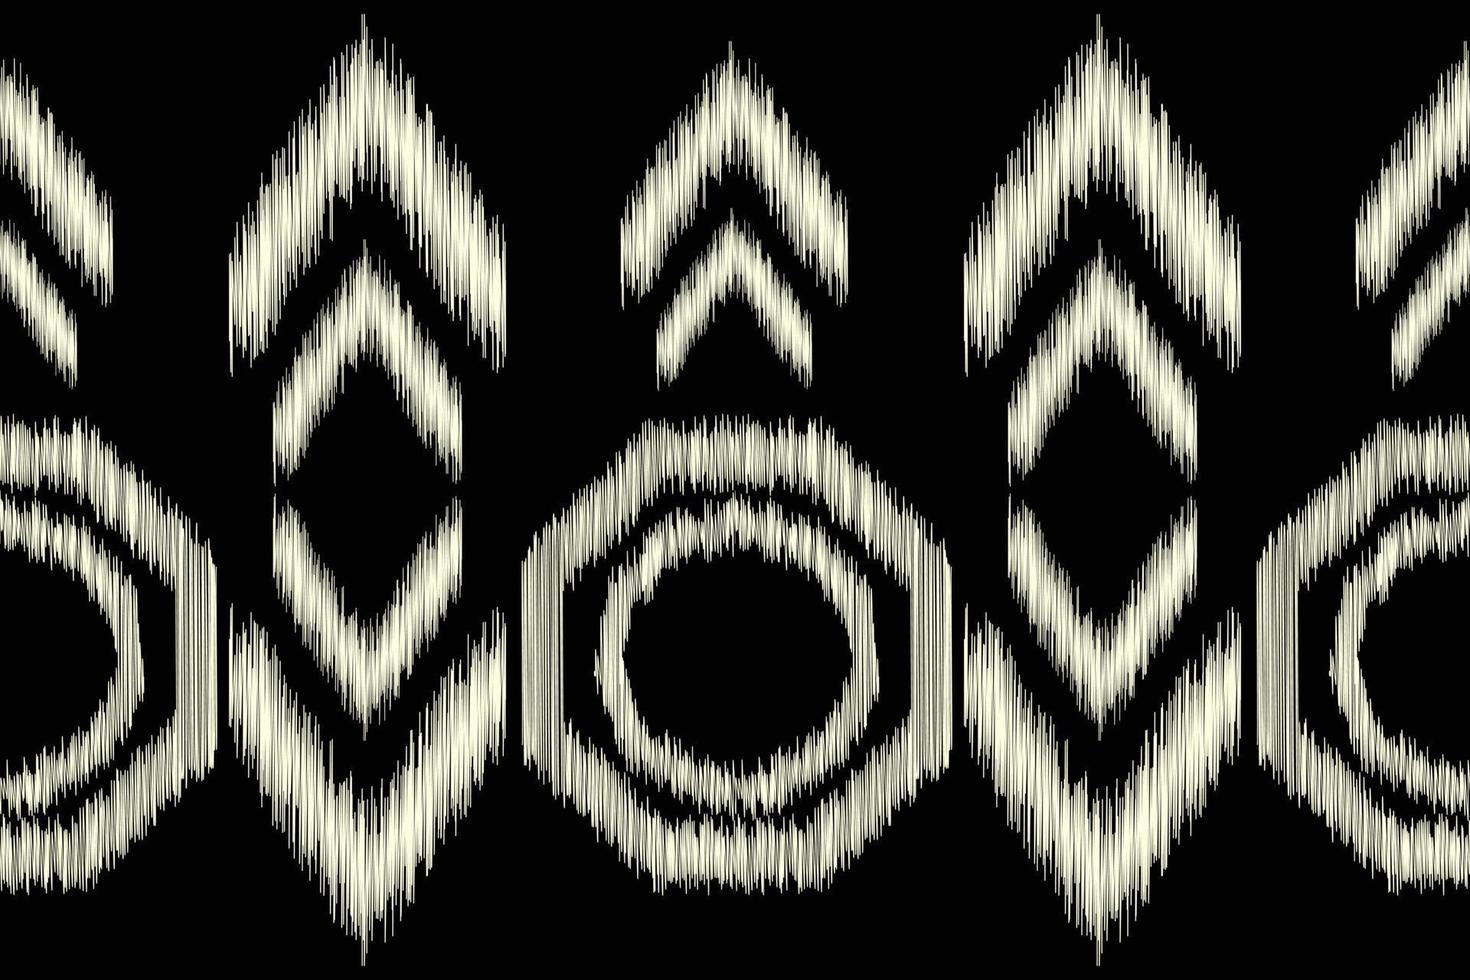 etnico ikat tessuto modello geometrico stile.africano ikat ricamo etnico orientale modello nero sfondo. astratto,vettore,illustrazione.per trama, abbigliamento, scraf, decorazione, tappeto. vettore